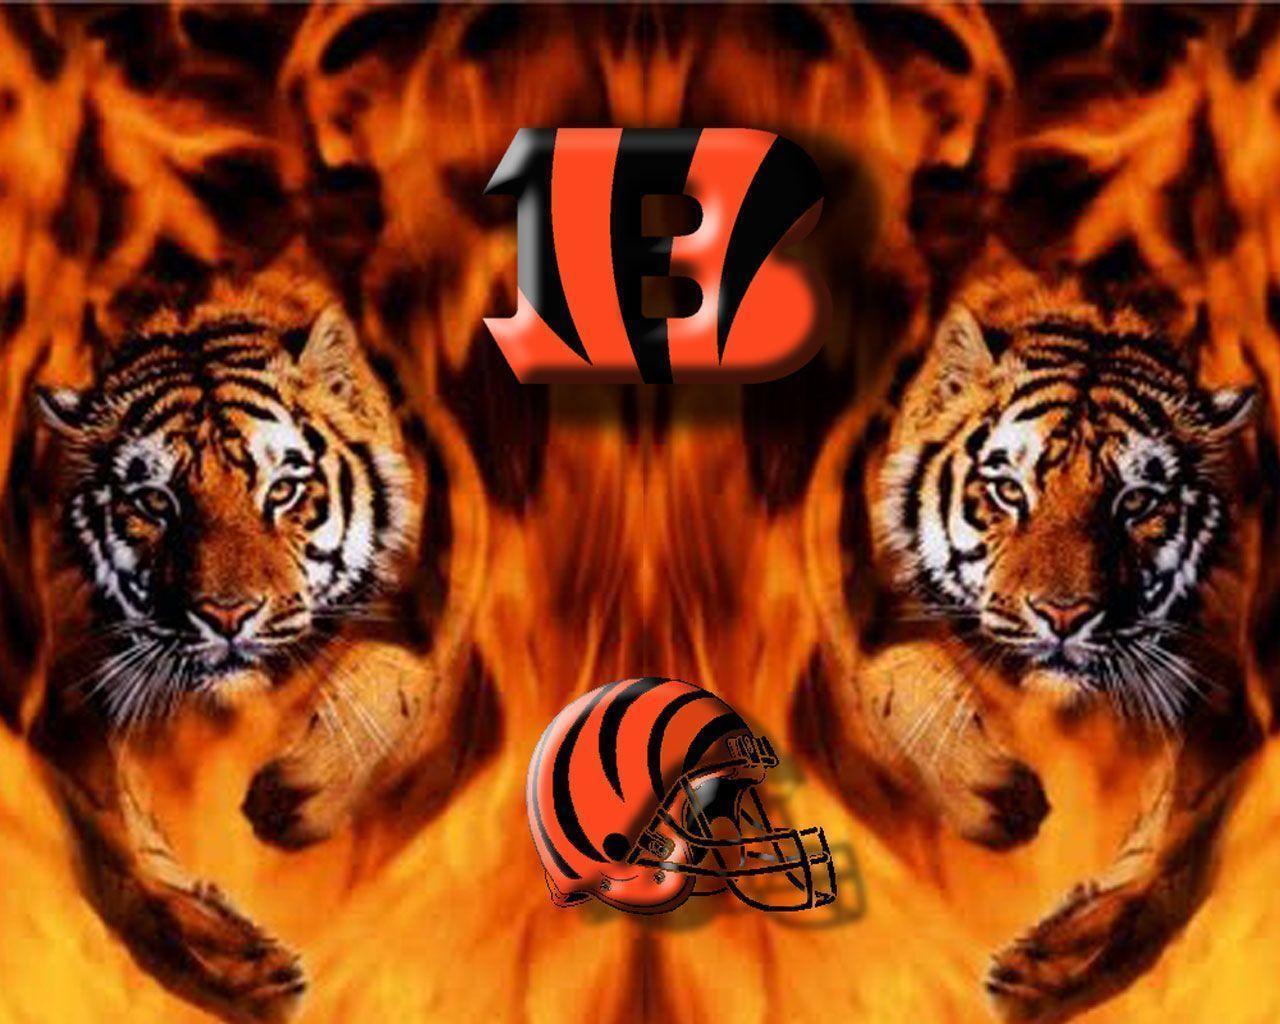 Cincinnati Bengals Two Tigers Wallpaper Nfl 1280x1024PX Bengals